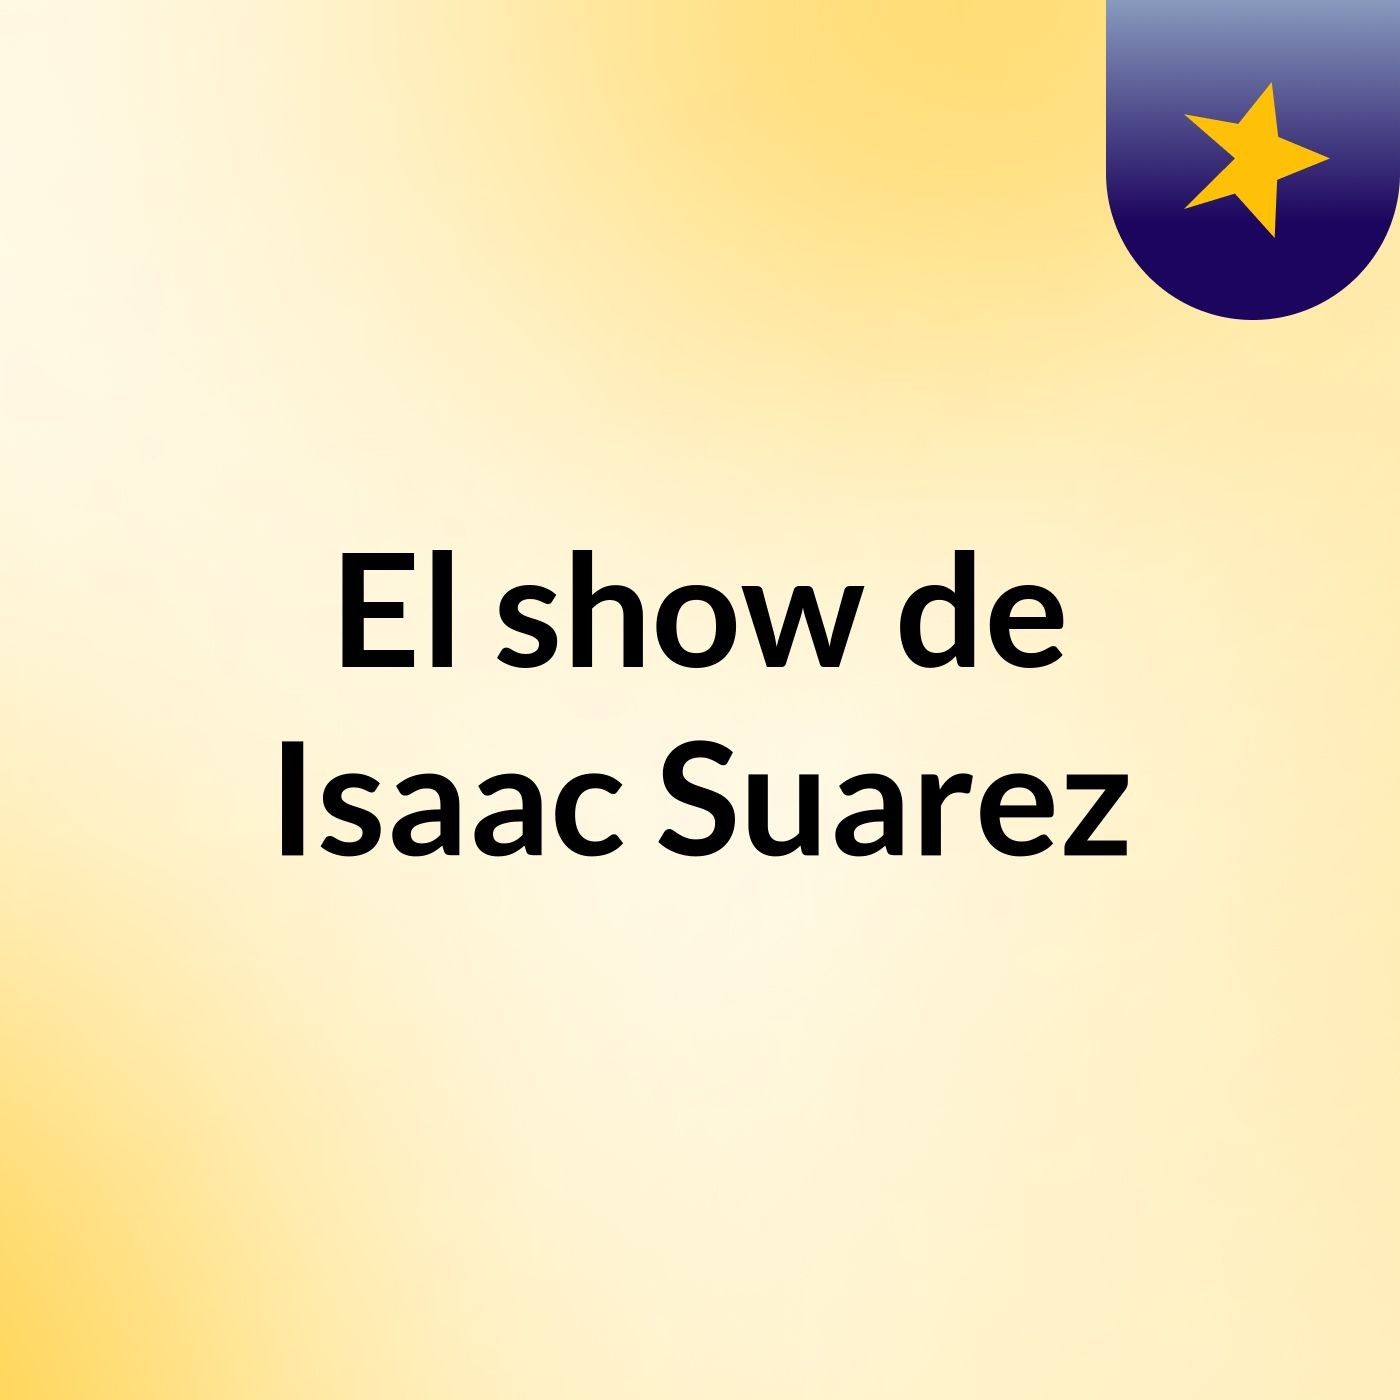 El show de Isaac Suarez